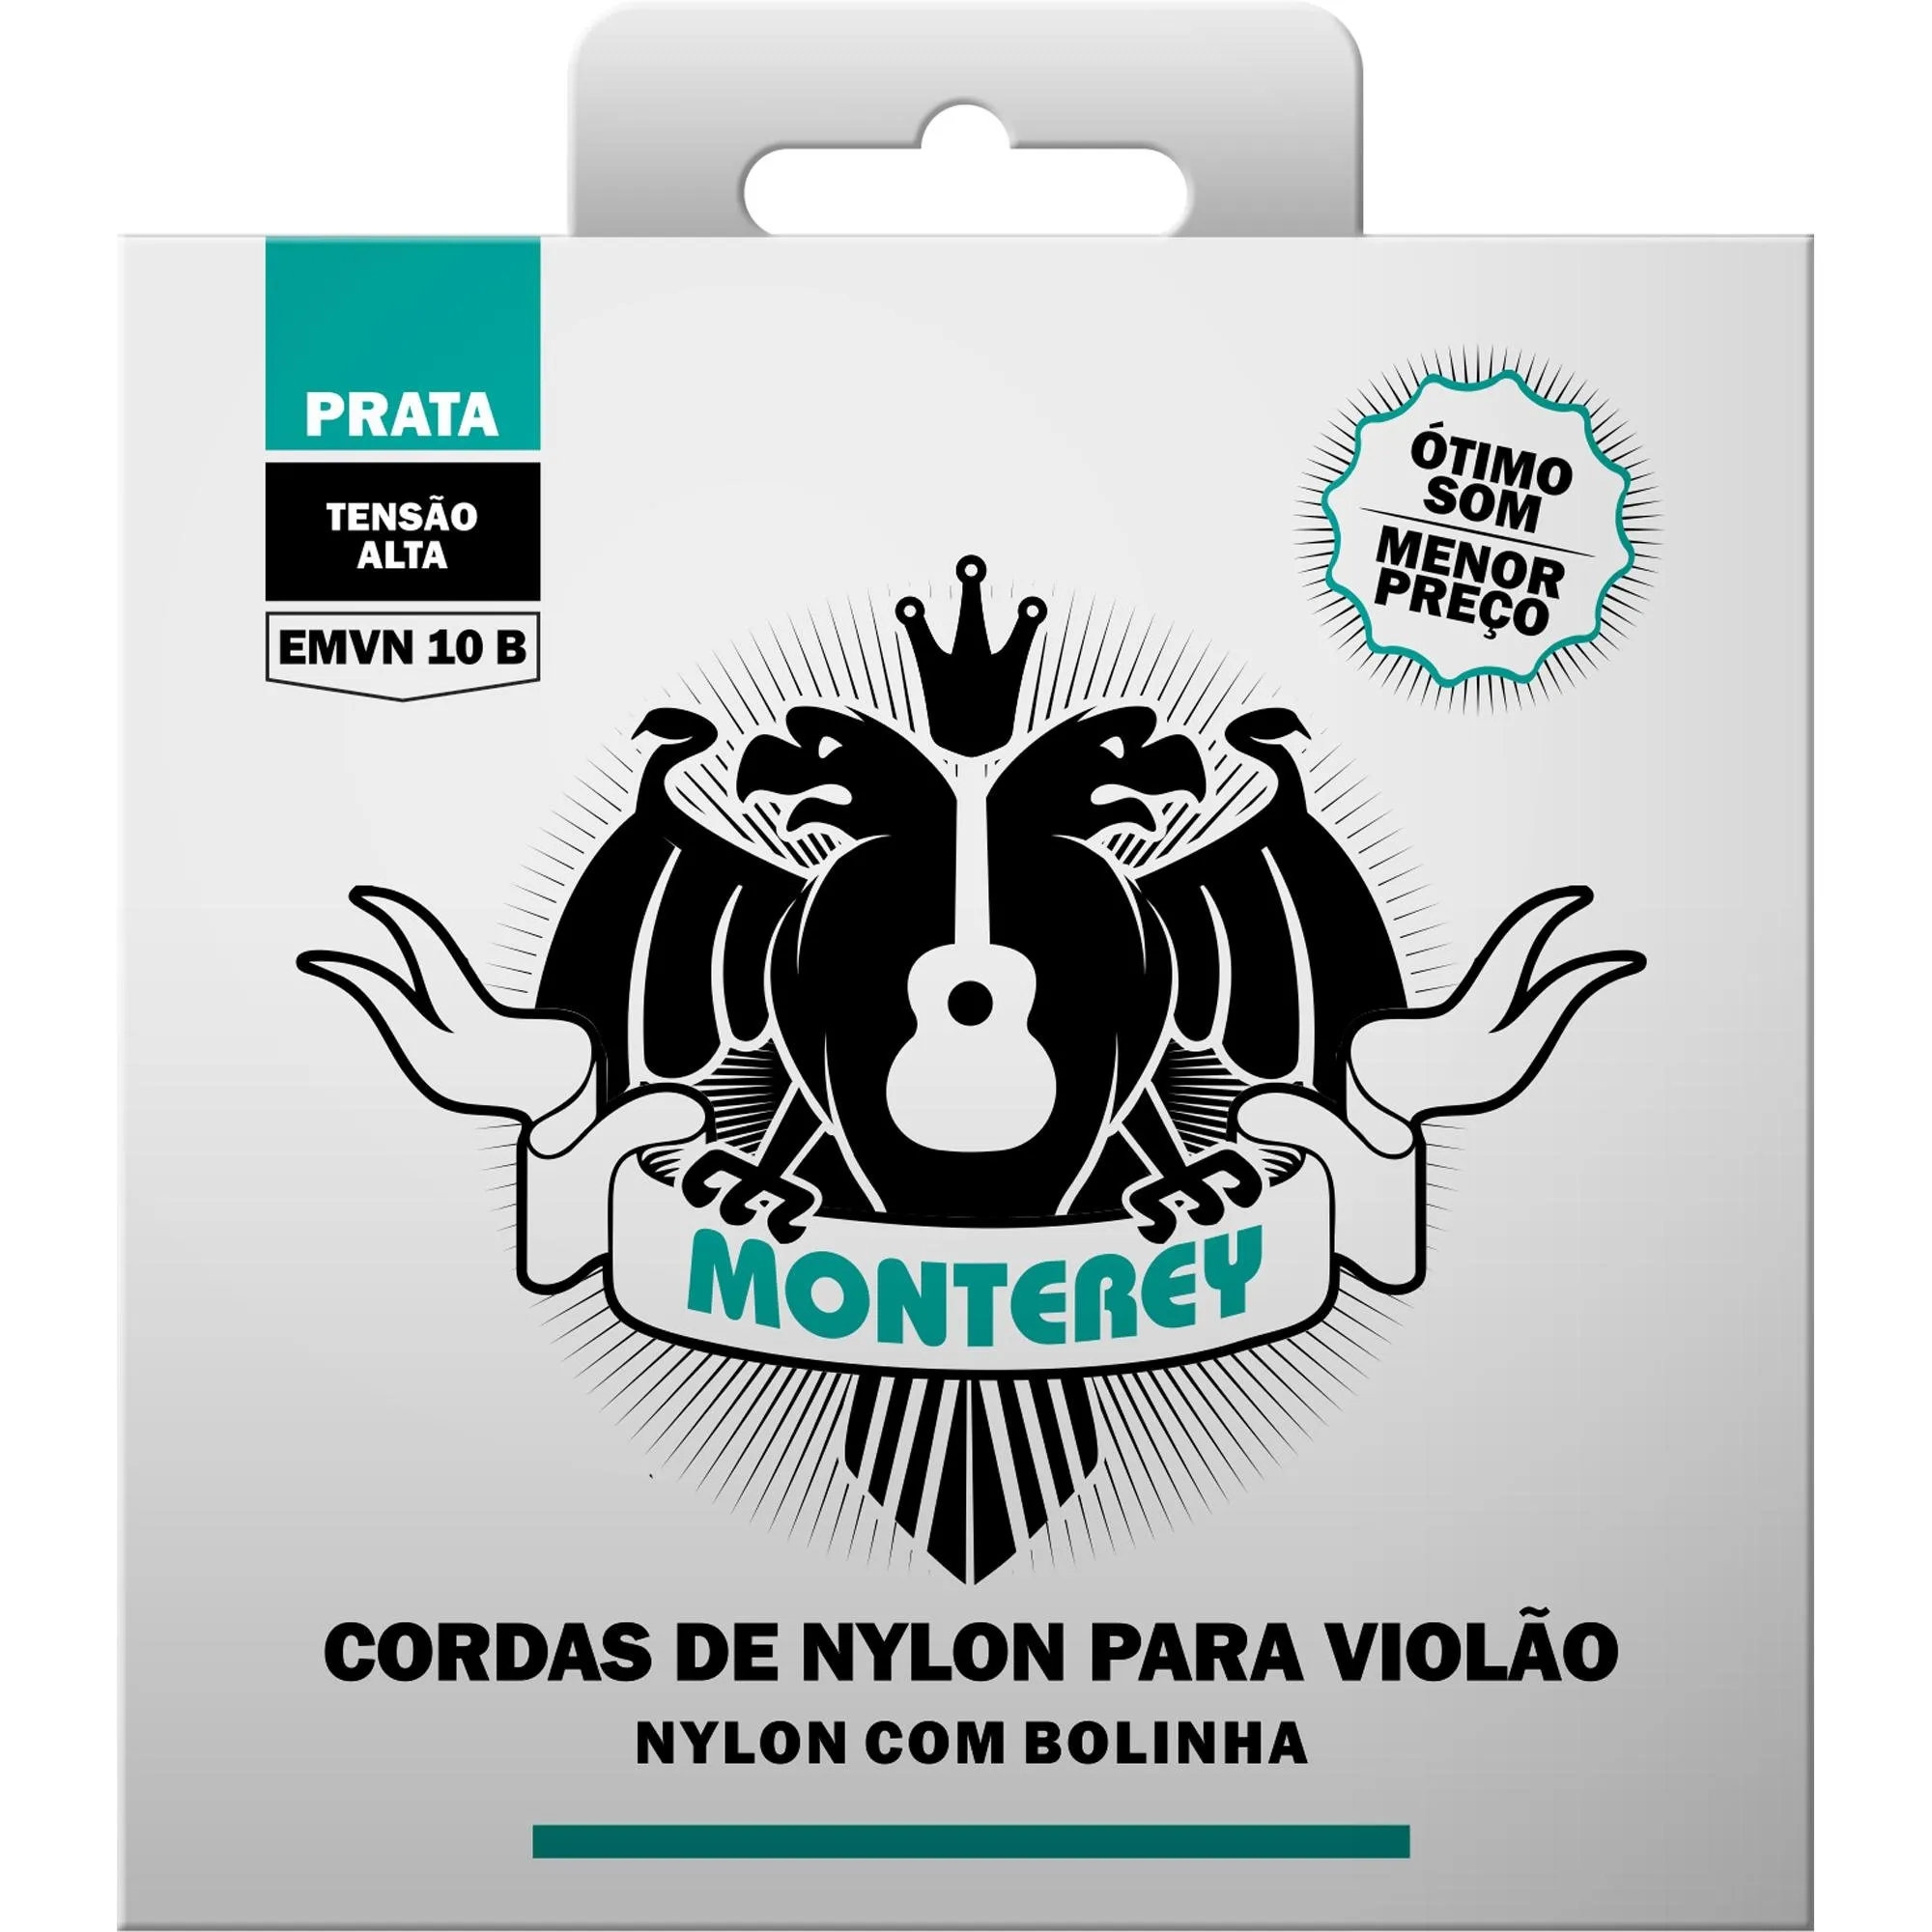 Encordoamento Para Violão Nylon Alta Solez Monterey por 24,99 à vista no boleto/pix ou parcele em até 1x sem juros. Compre na loja Mundomax!